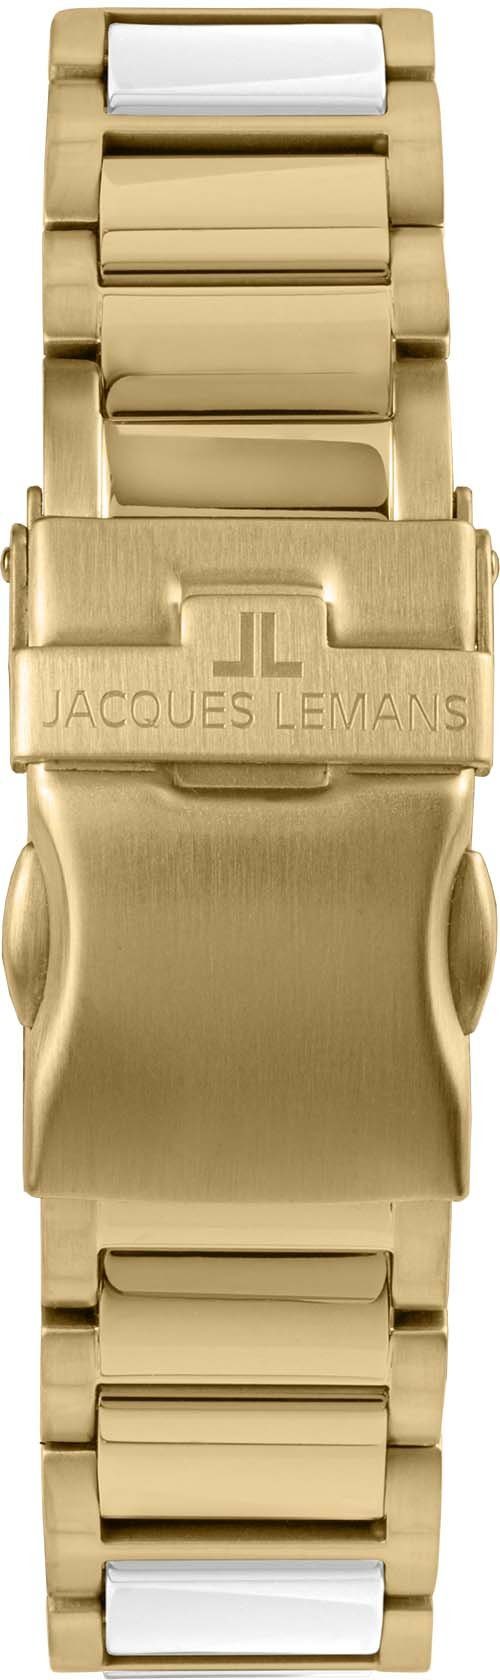 Liverpool, 42-12L Jacques Lemans Keramikuhr